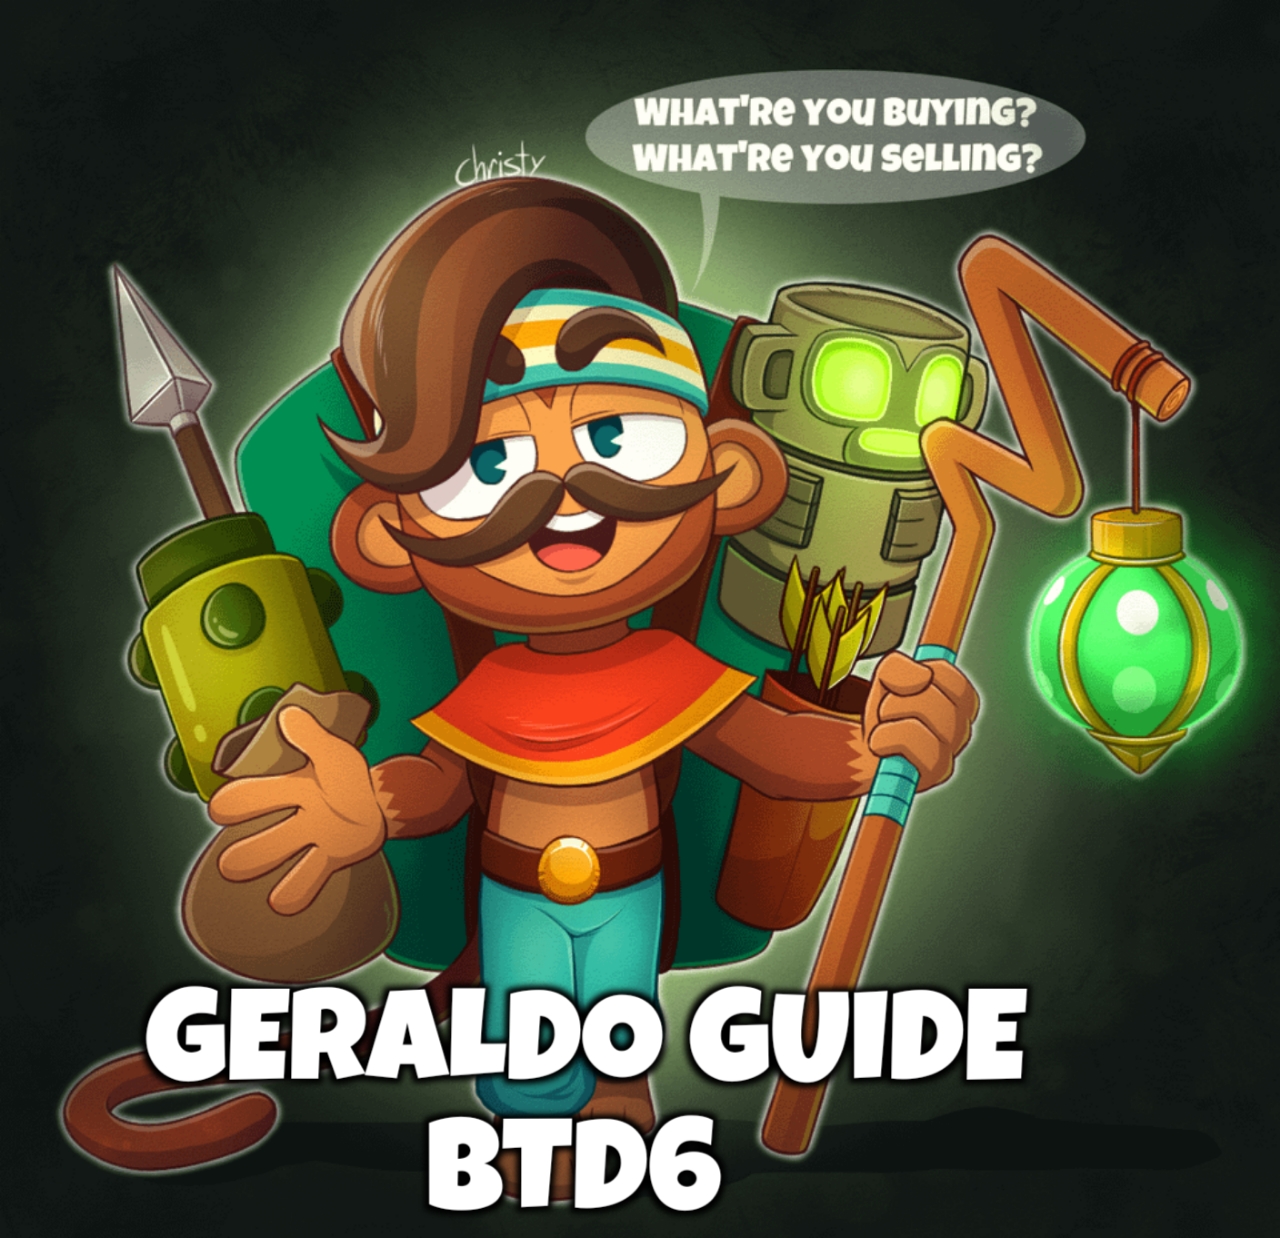 Geraldo guide btd6